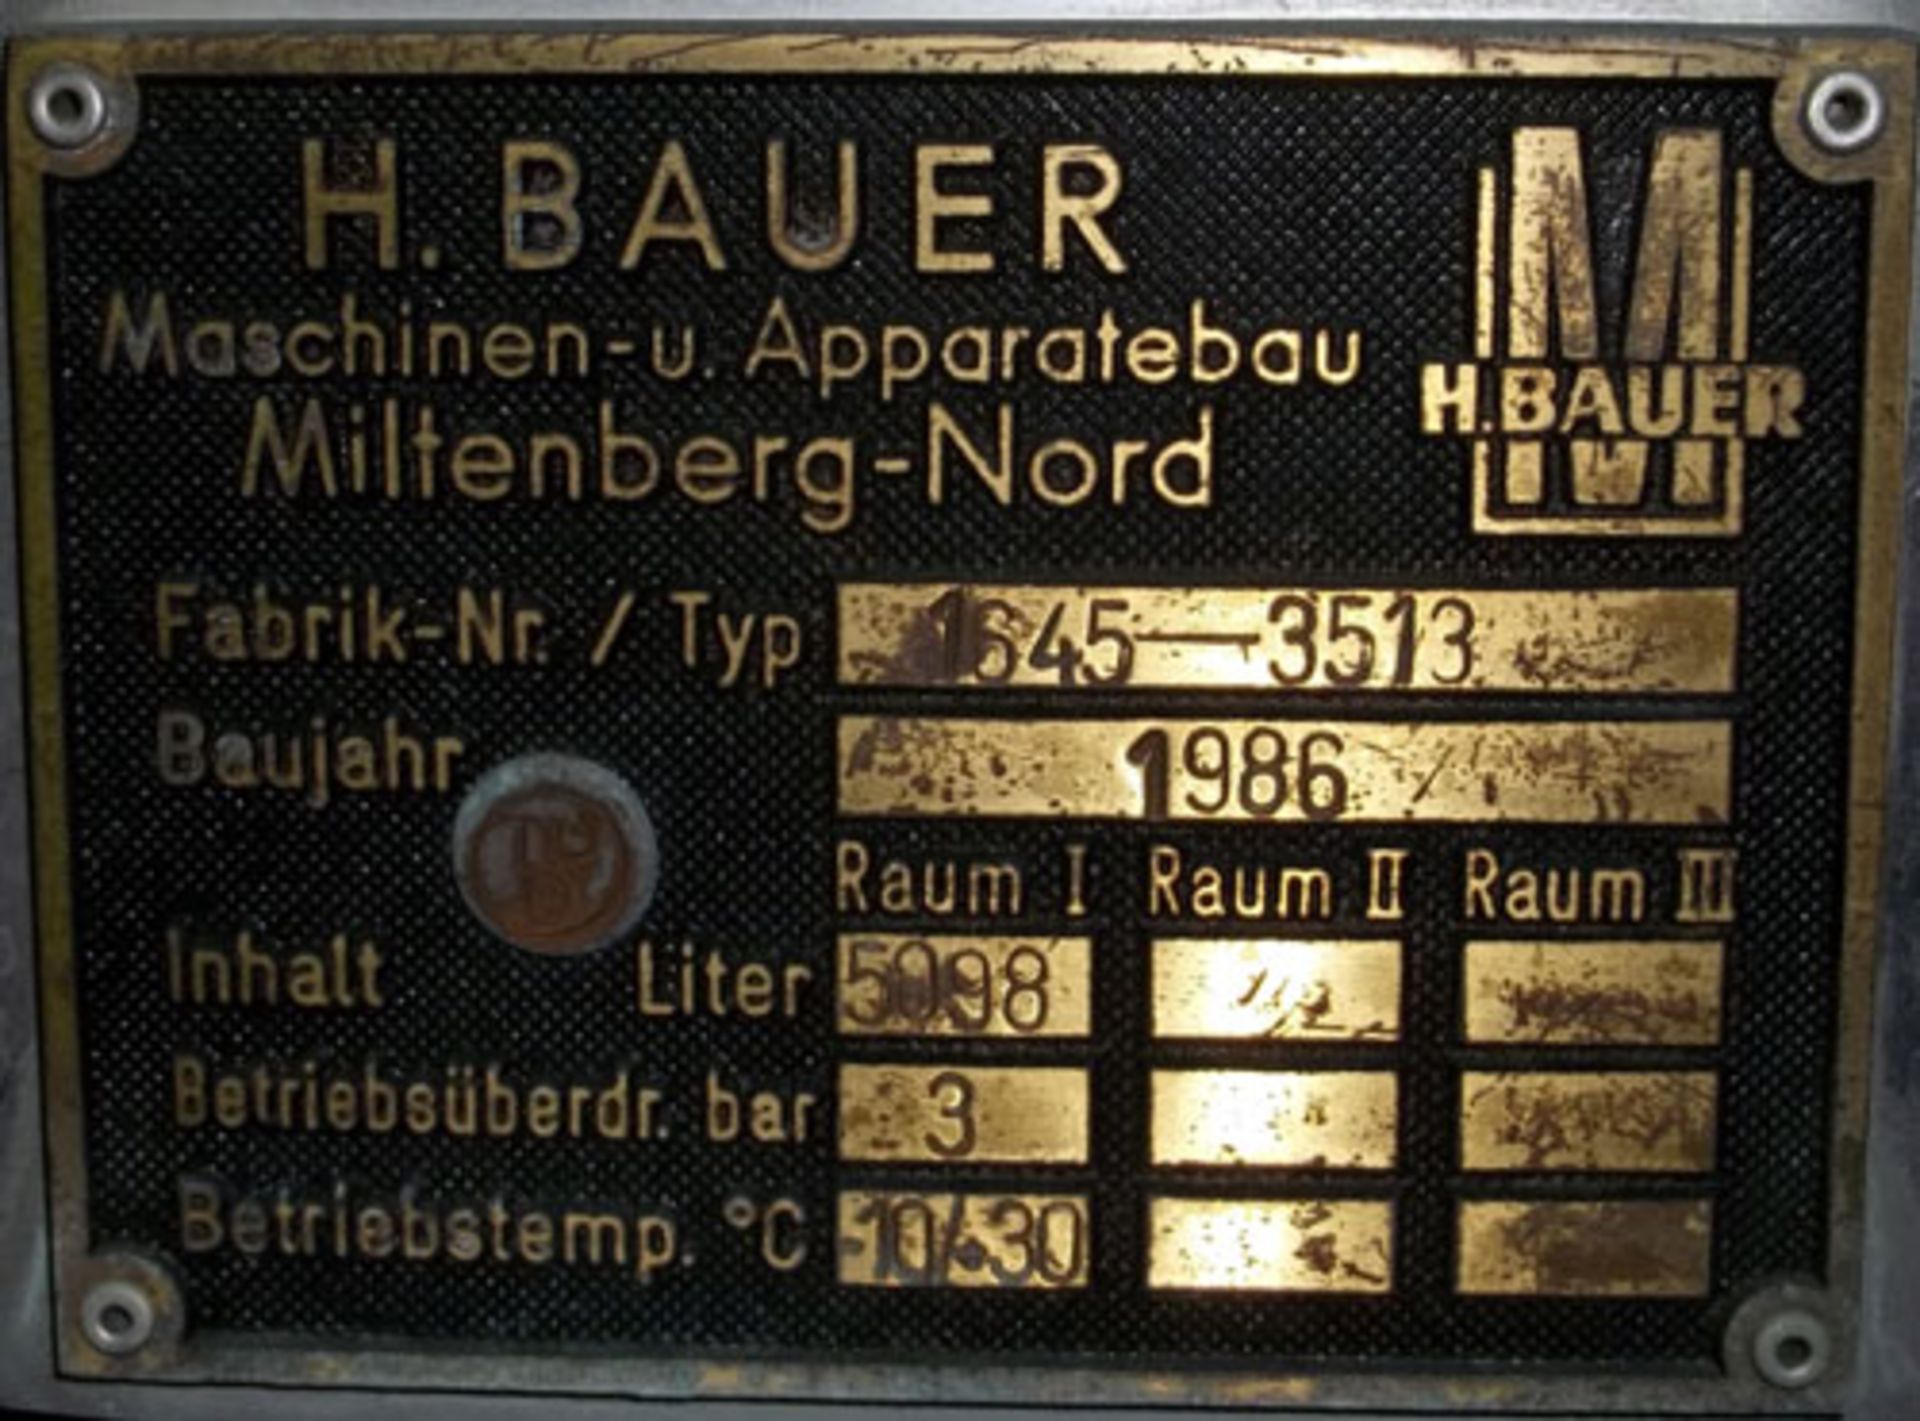 H. Bauer Maschinen-und-Apparatebau stainless steel tank, 1348 gallon (5098 liter) capacity, - Image 2 of 2